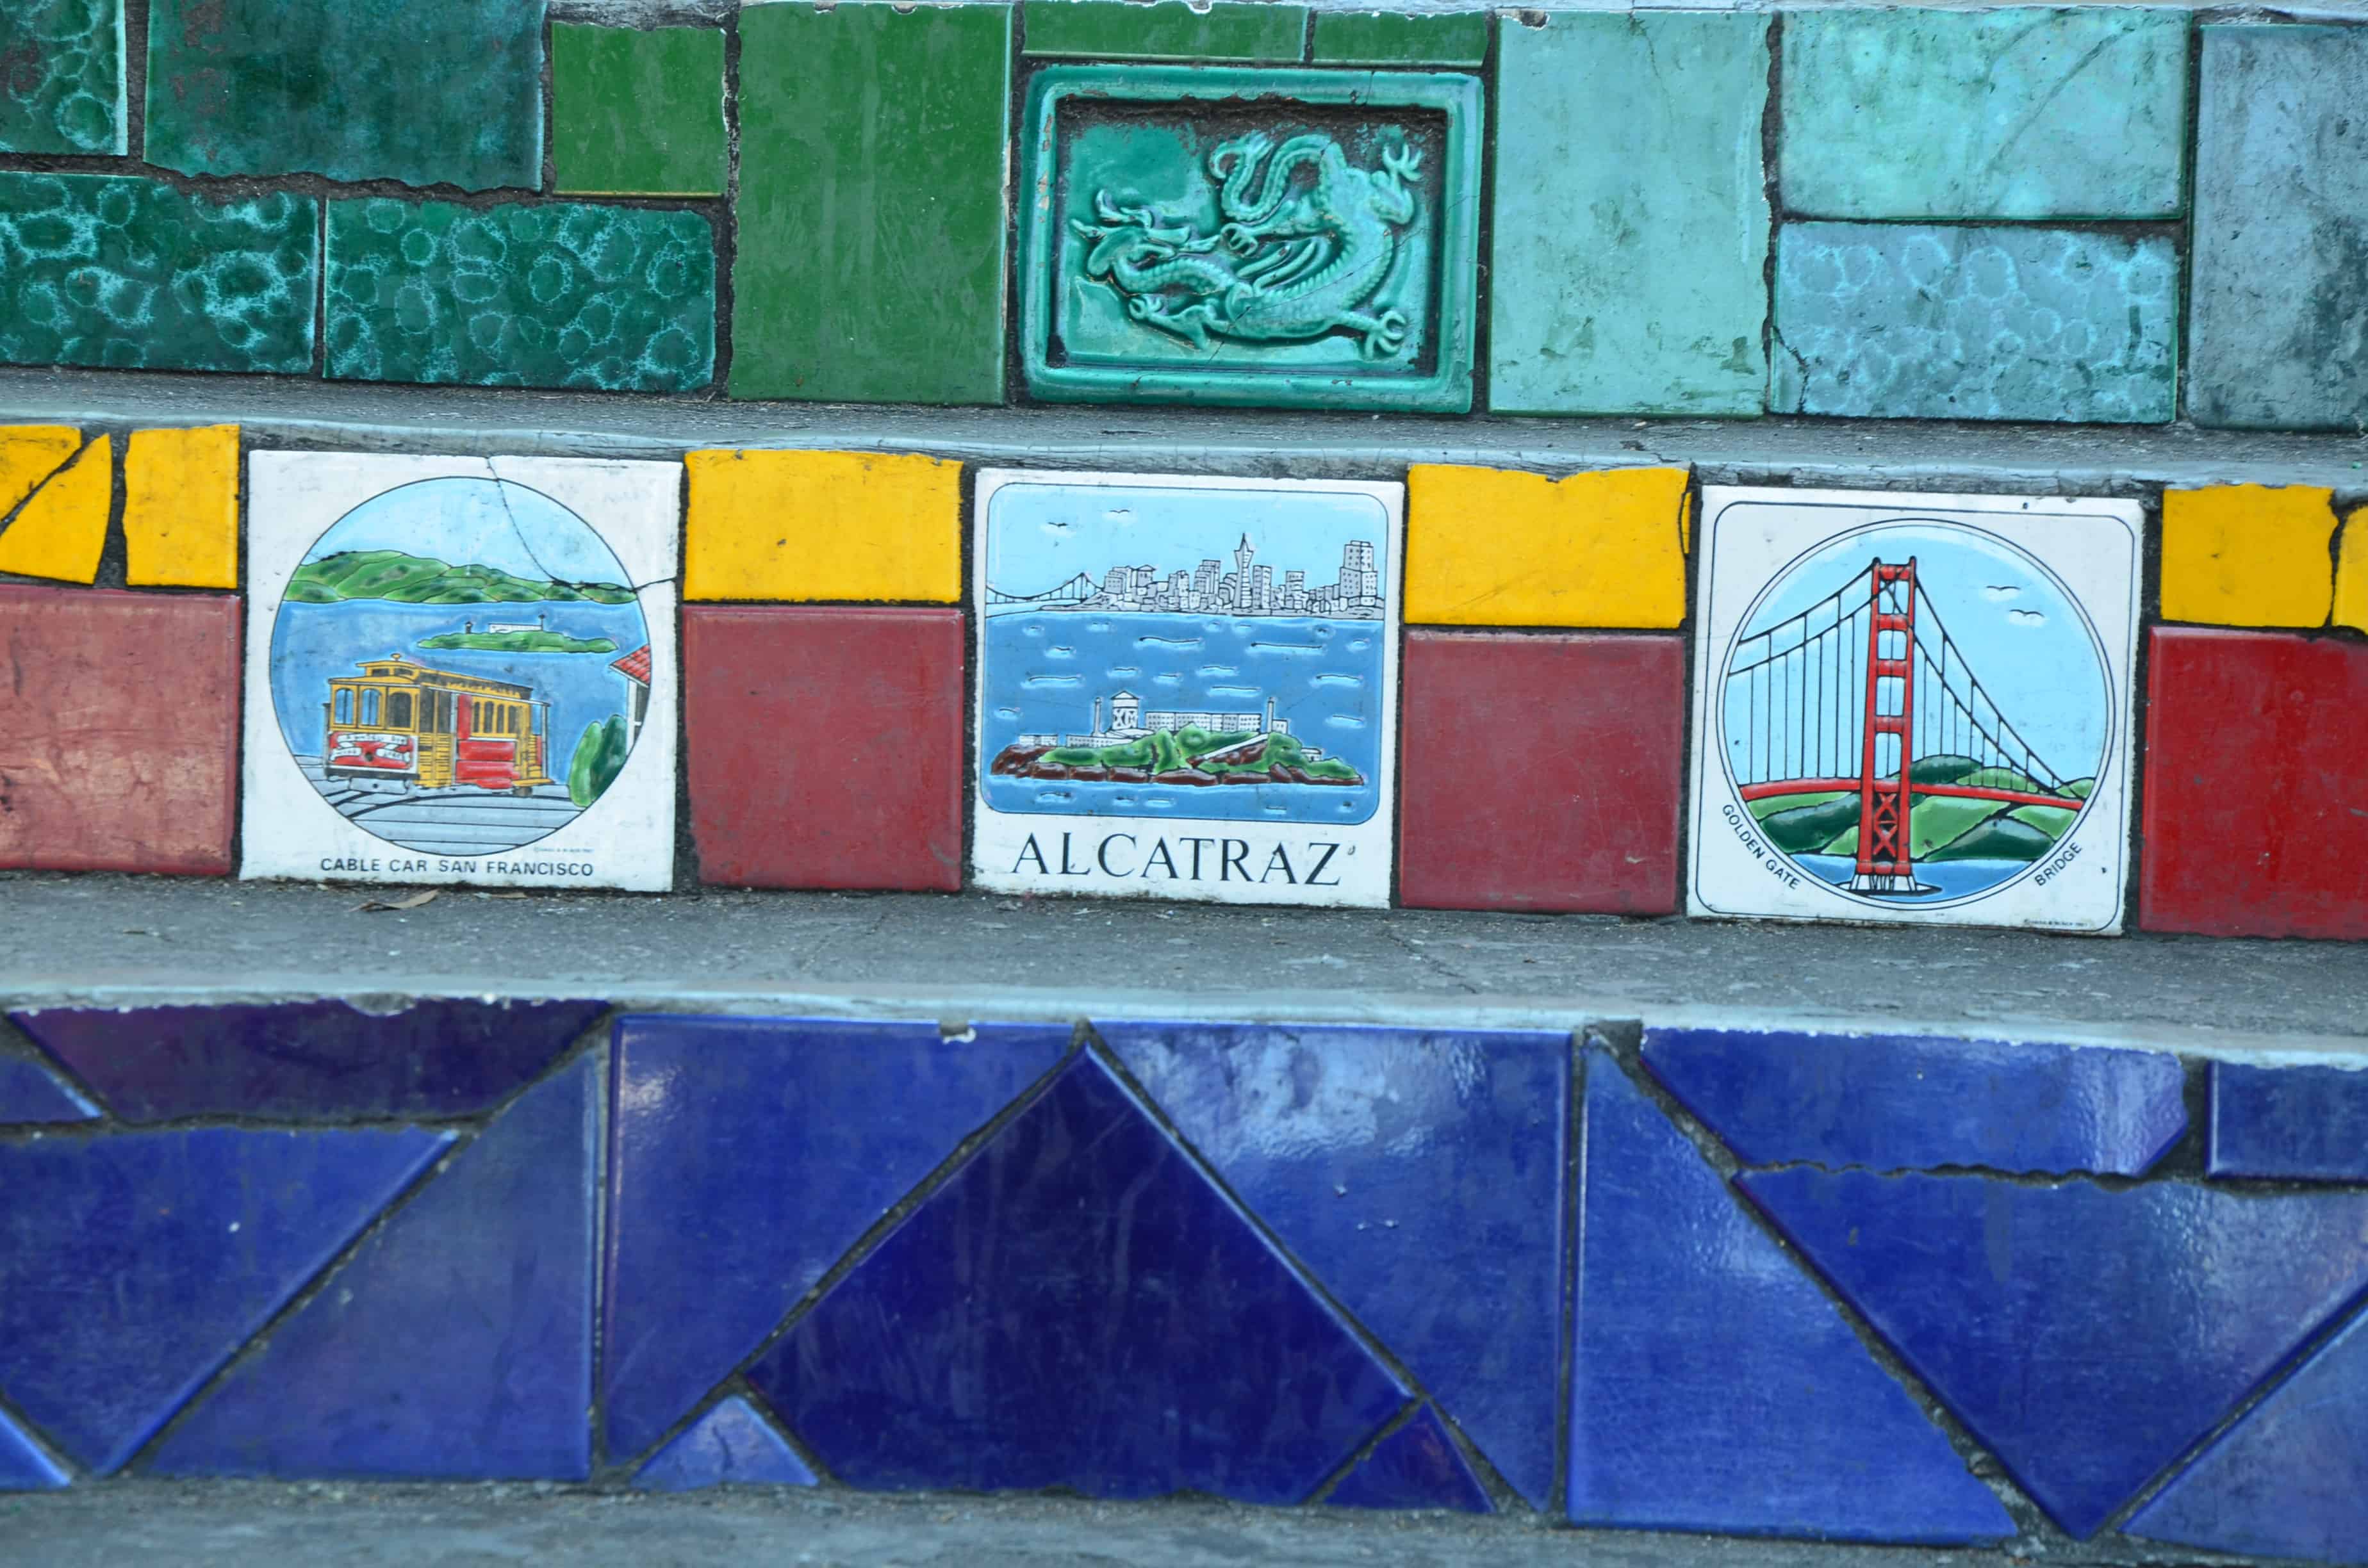 San Francisco tiles at Escadaria Selarón in Rio de Janeiro, Brazil